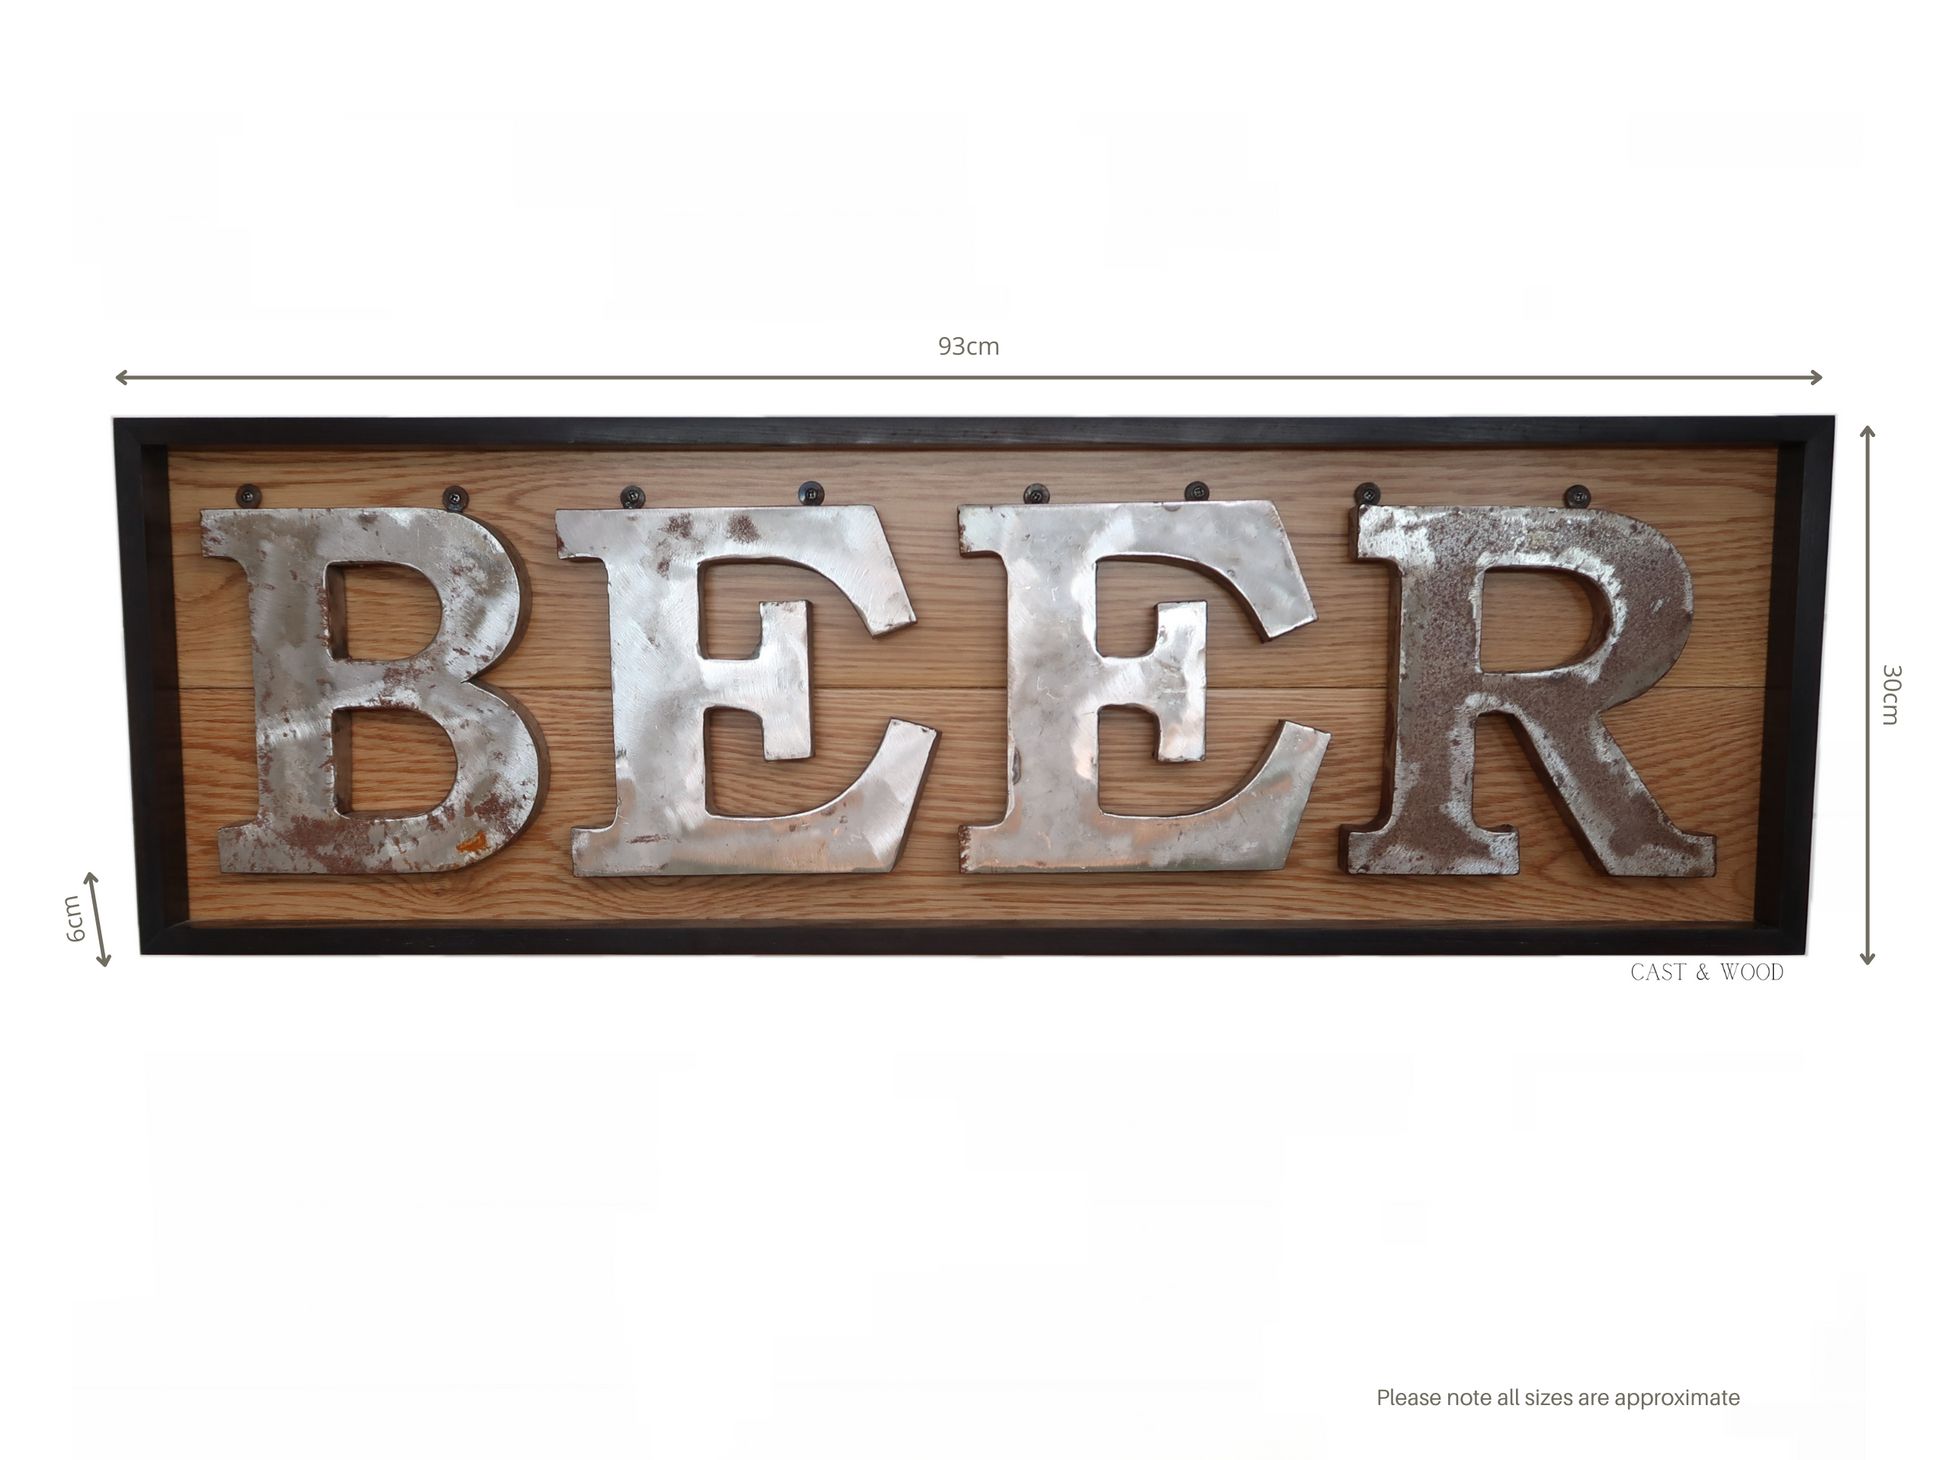 Handmade Beer Wall Sign